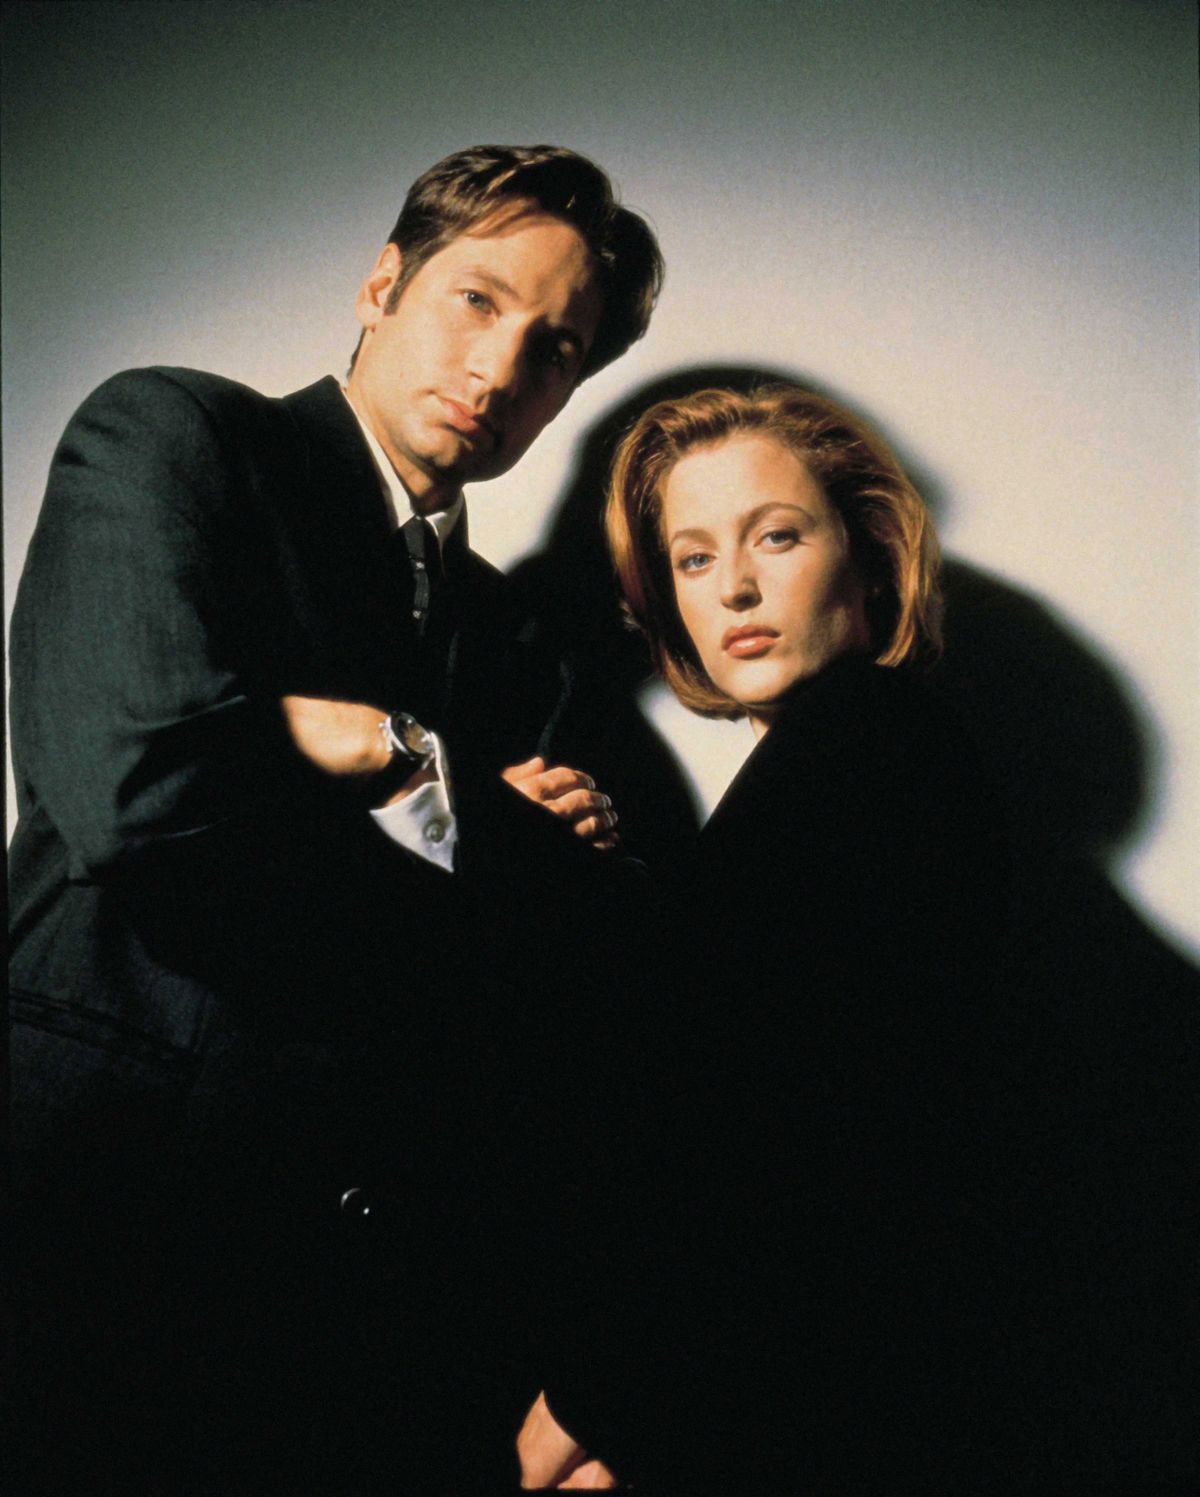 Mulder és Scully, azaz David Duchovny és Gillian Anderson: jön az X-akták reboot